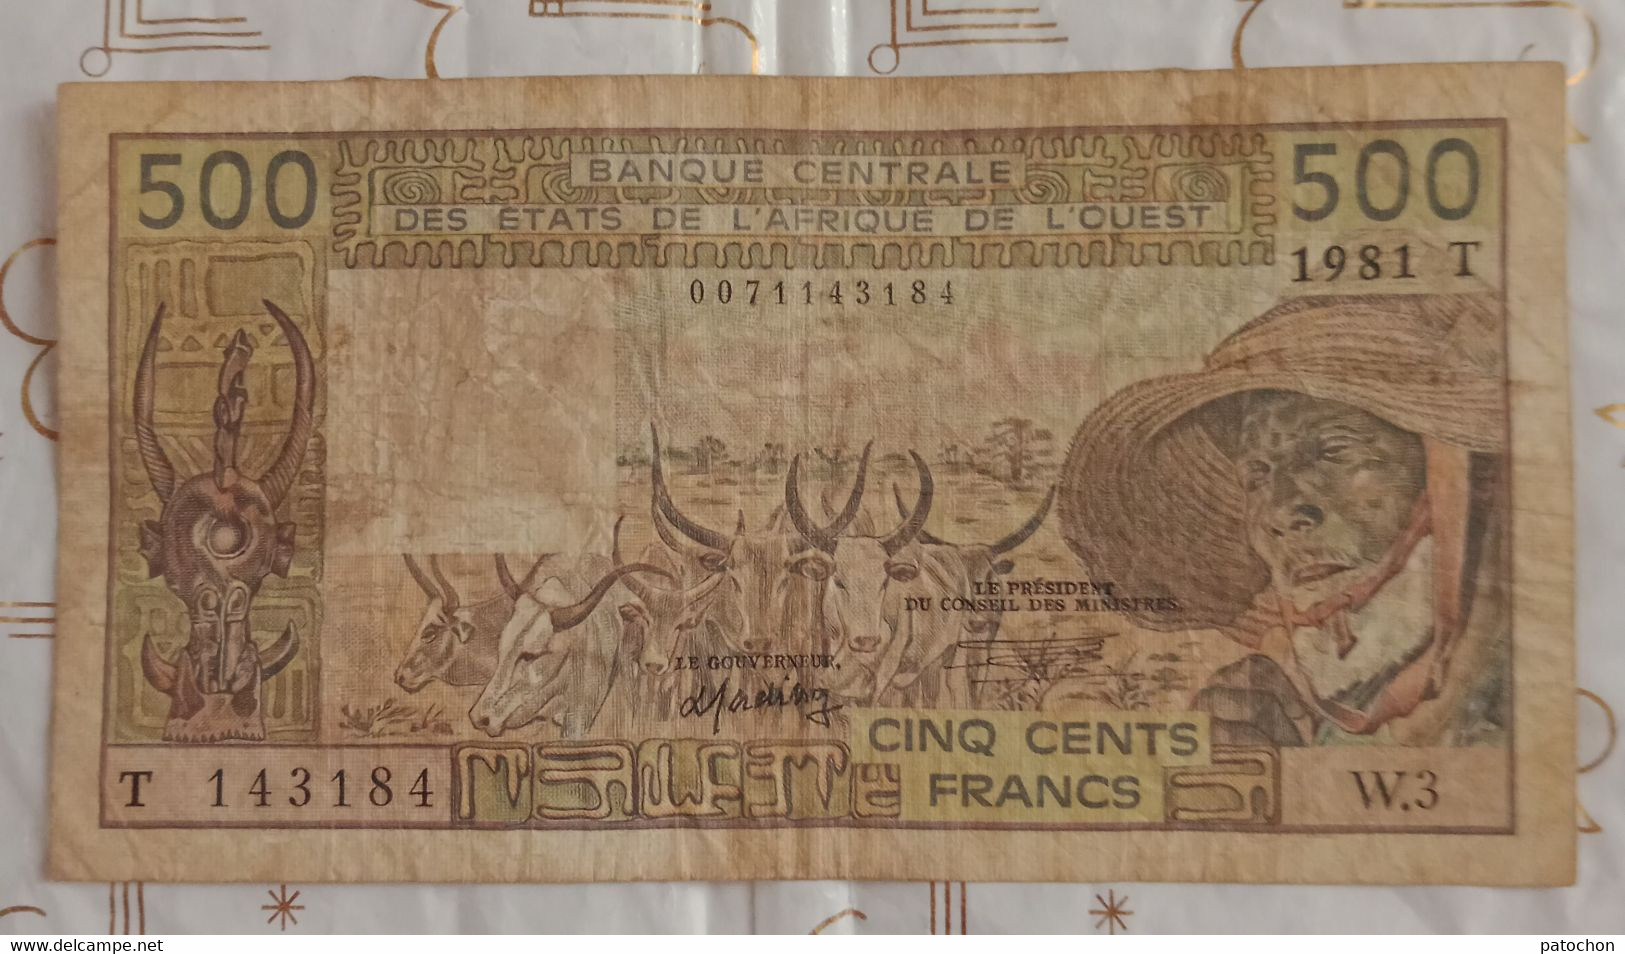 Billet 500 Francs BCEAO 1981 T N°143184 W.3 Colonies - Non Classificati